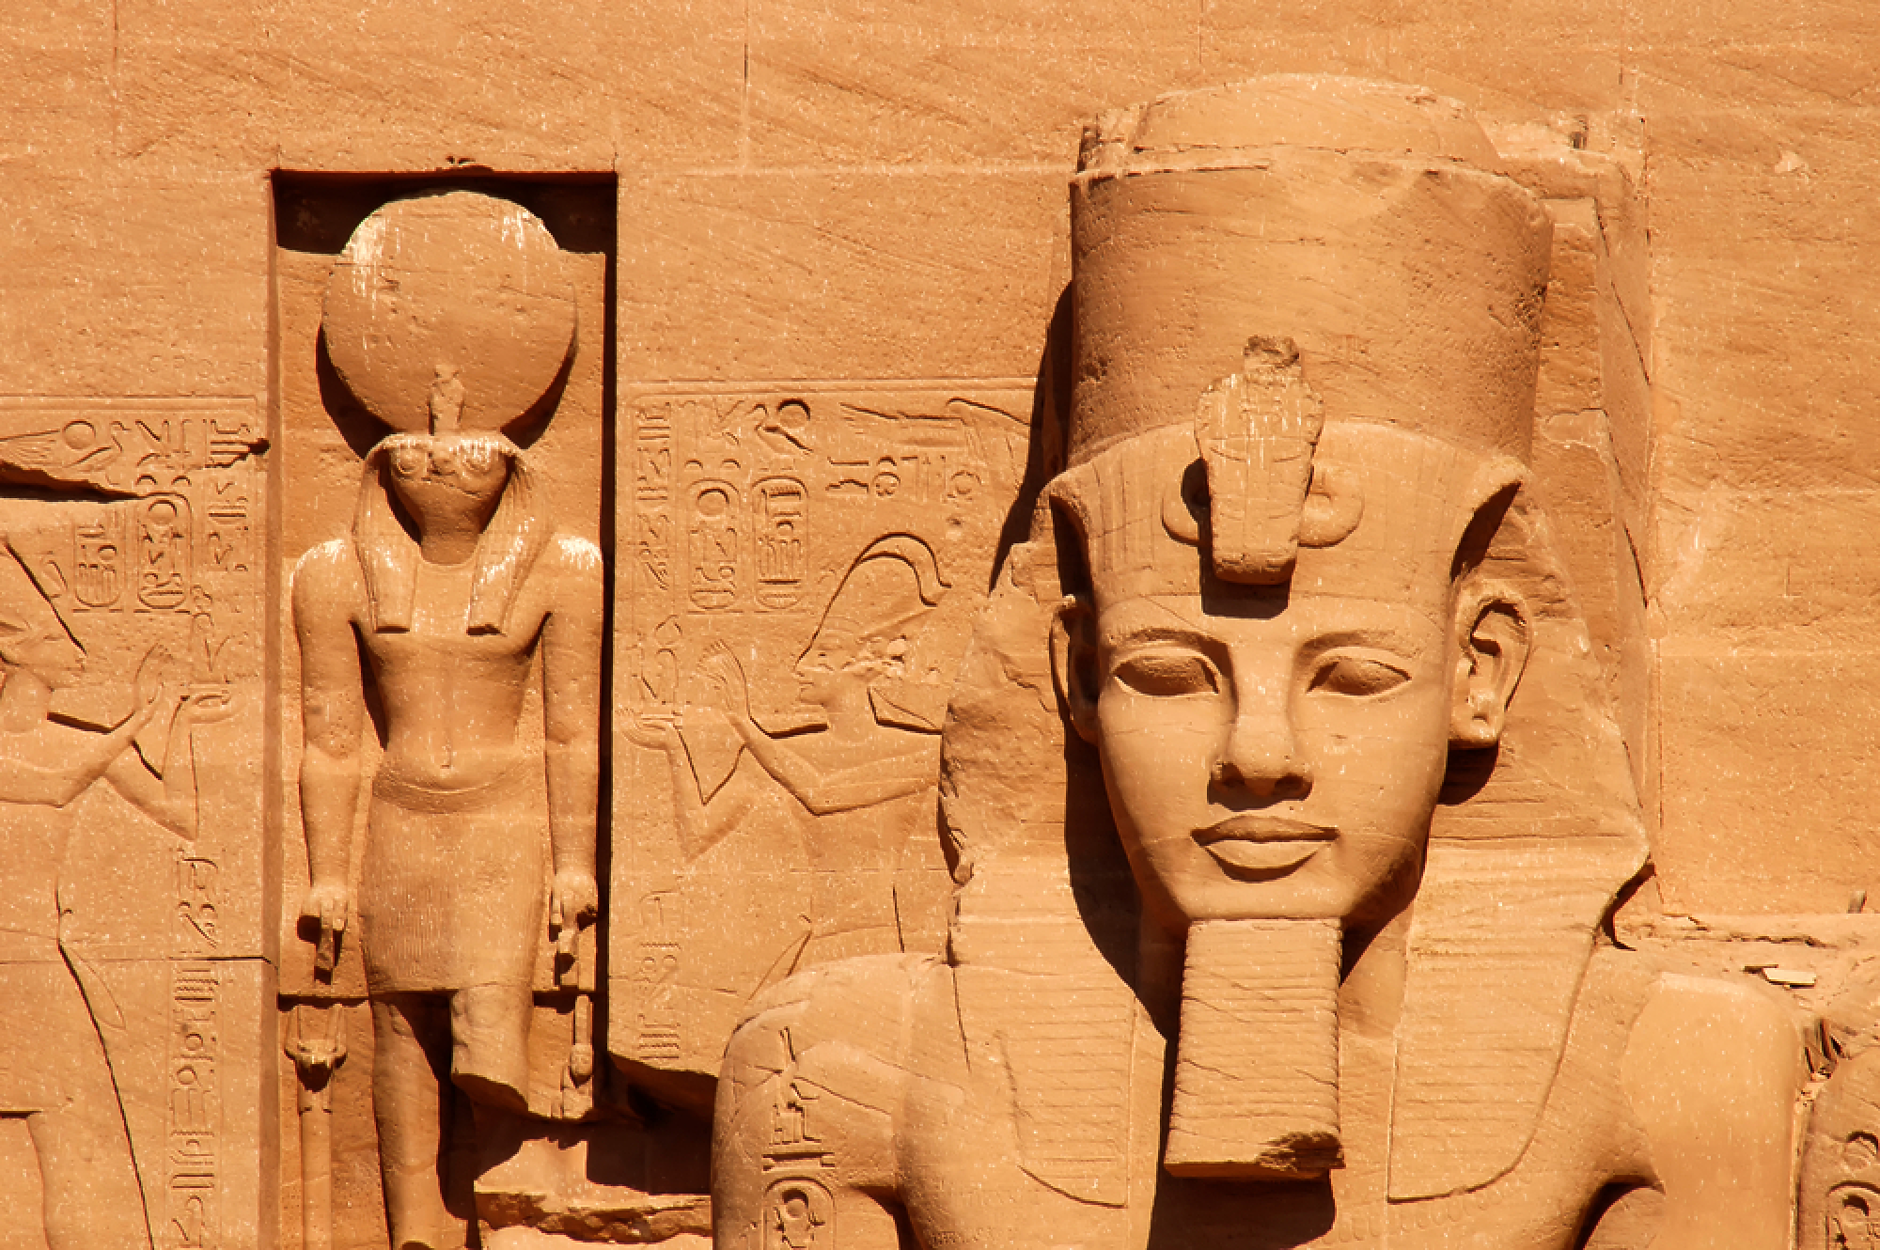 Археолози откриха статуя на най-могъщия египетски фараон  Рамзес II 